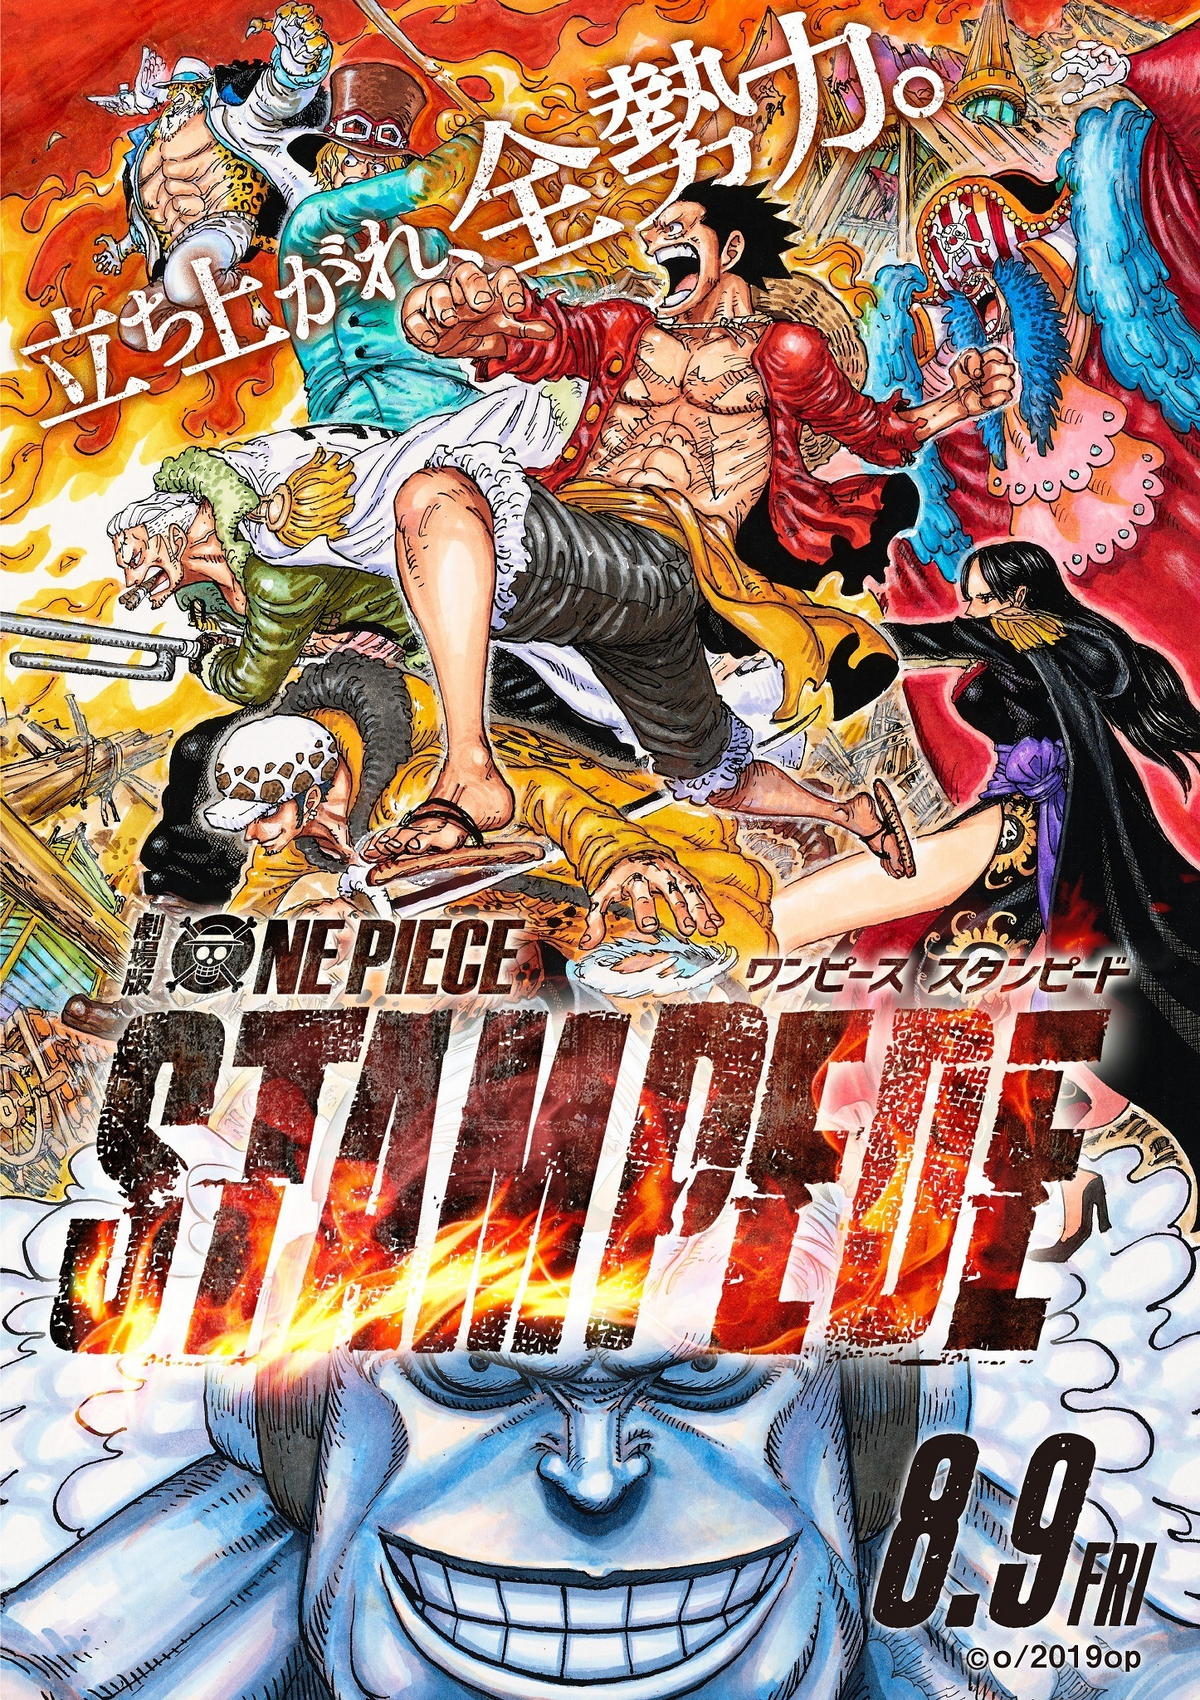 WDN - World Dubbing News on X: ☠️ Os filmes 'One Piece: Stampede' e 'One  Piece Gold: O Filme' chegam em março na HBO Max, com dublagem em Português.  💜  /